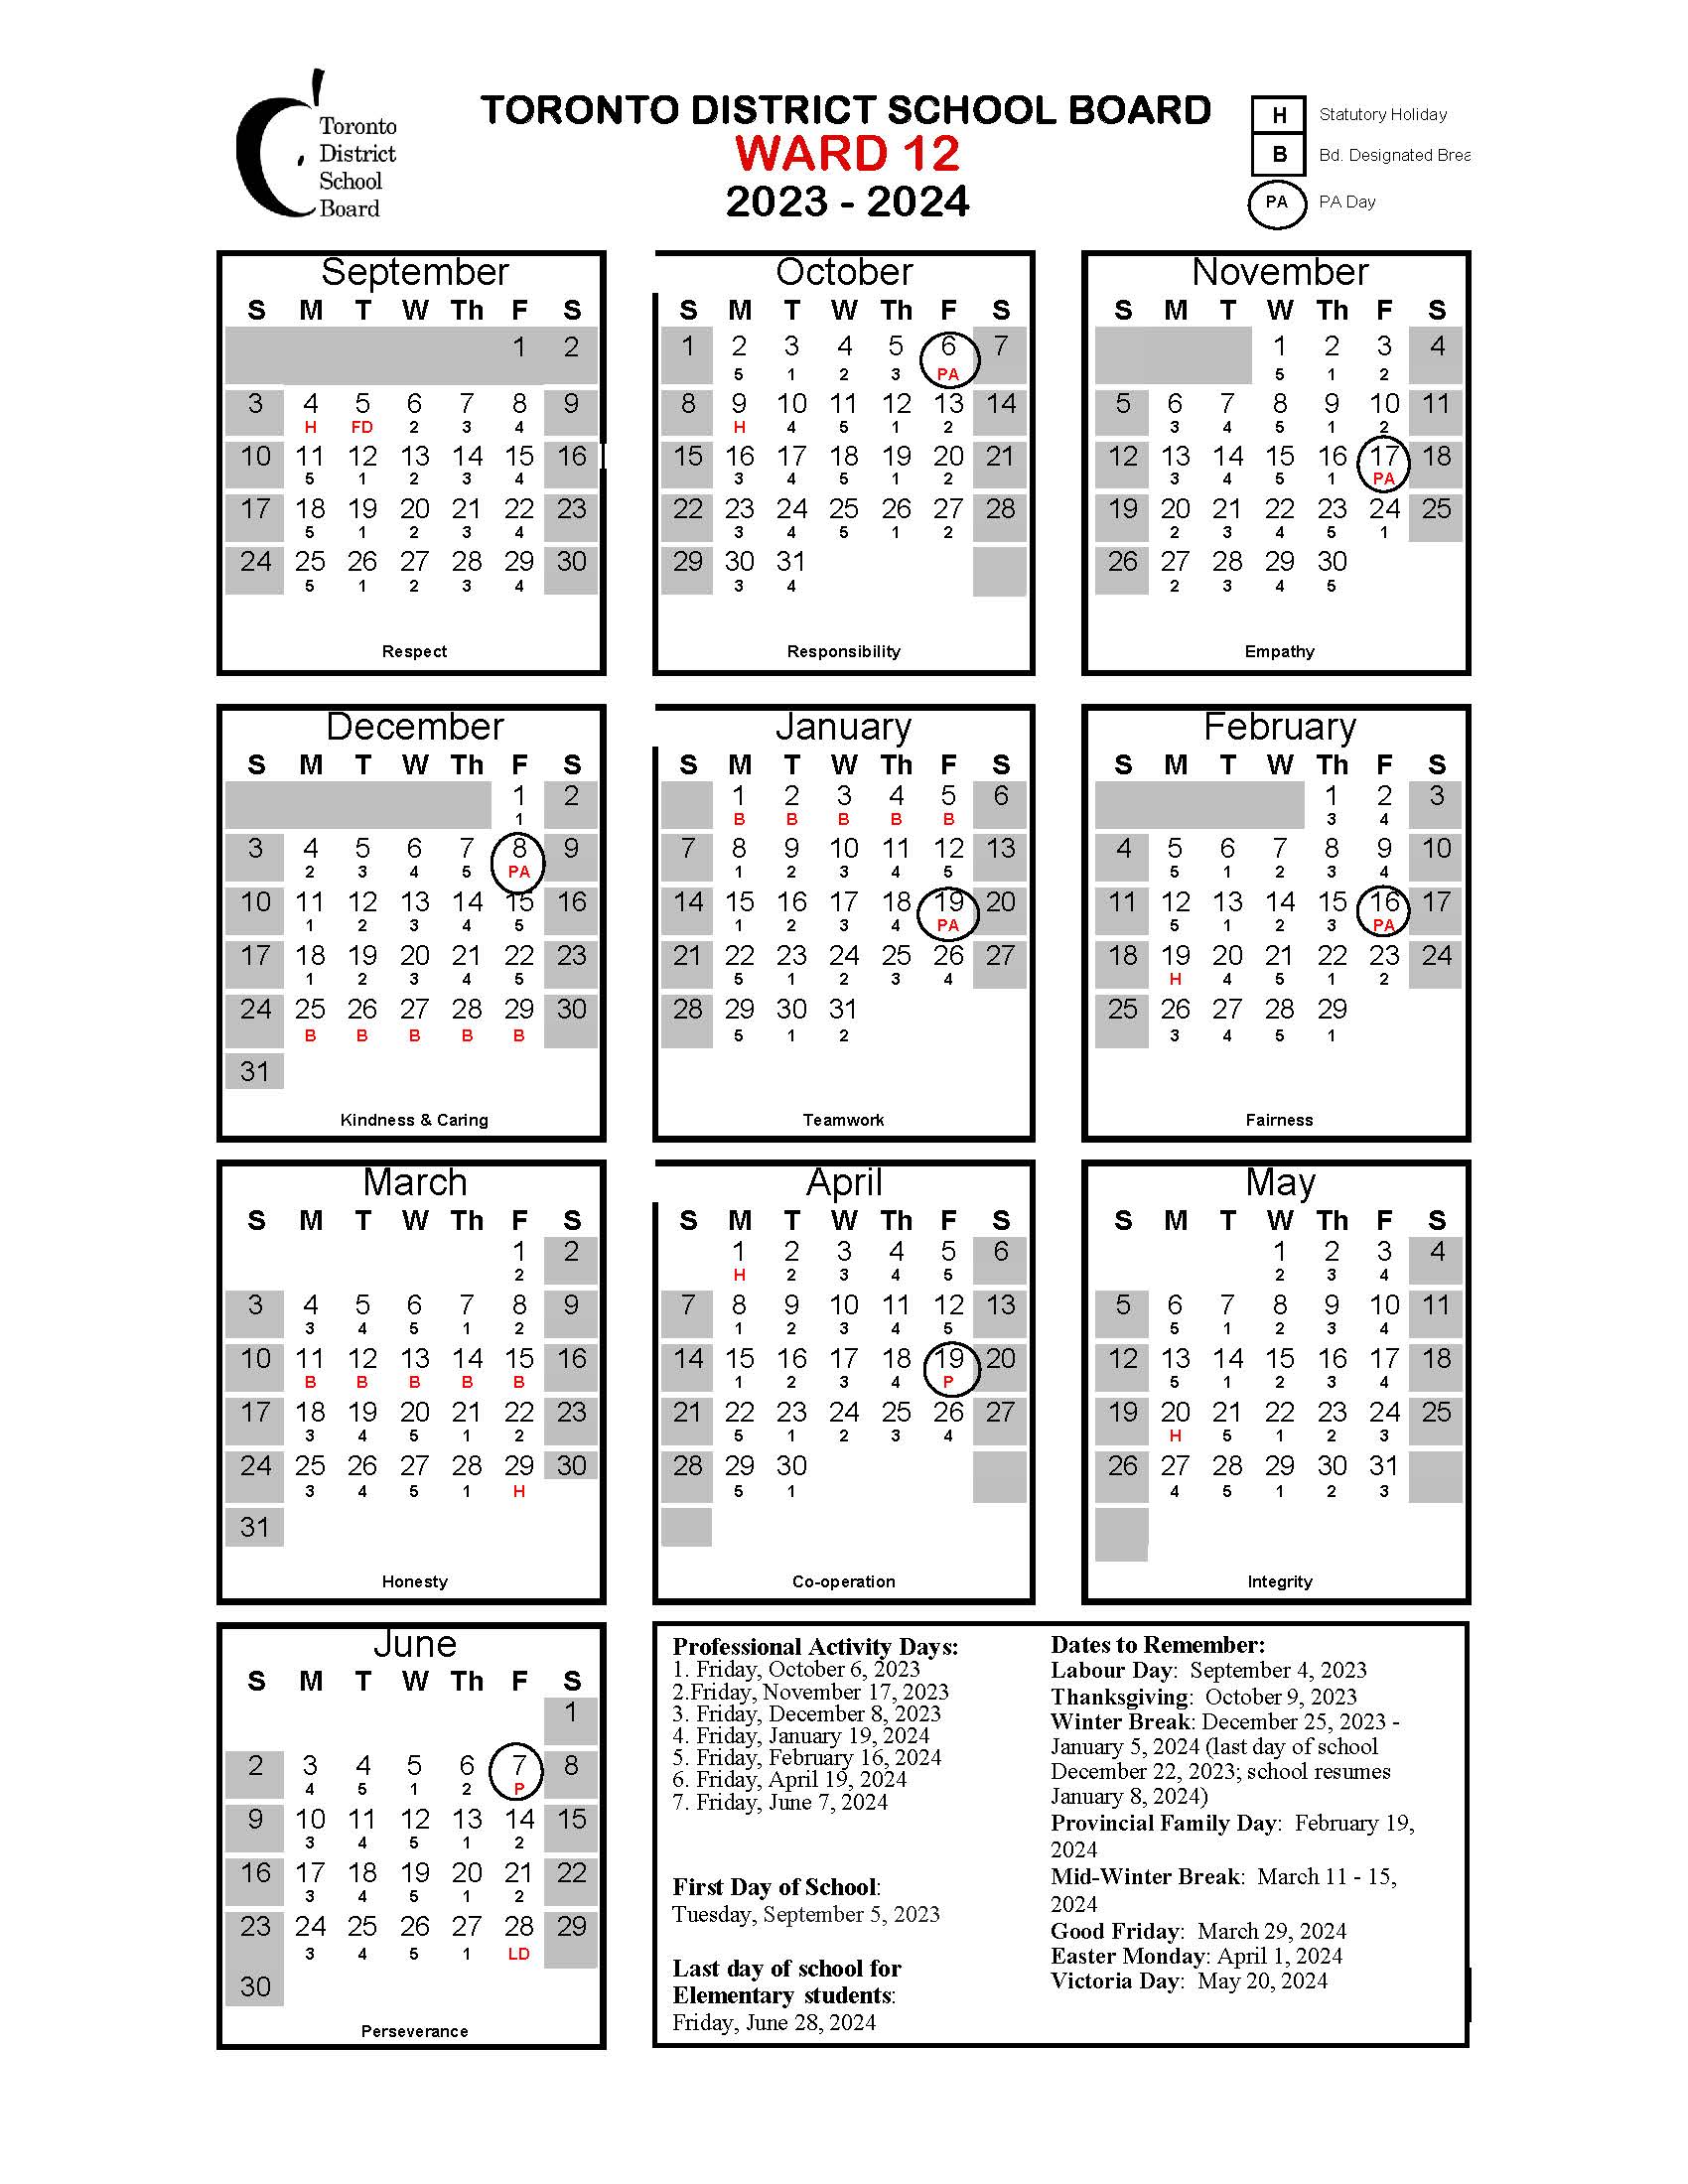 tdsb 2023-24 calendar